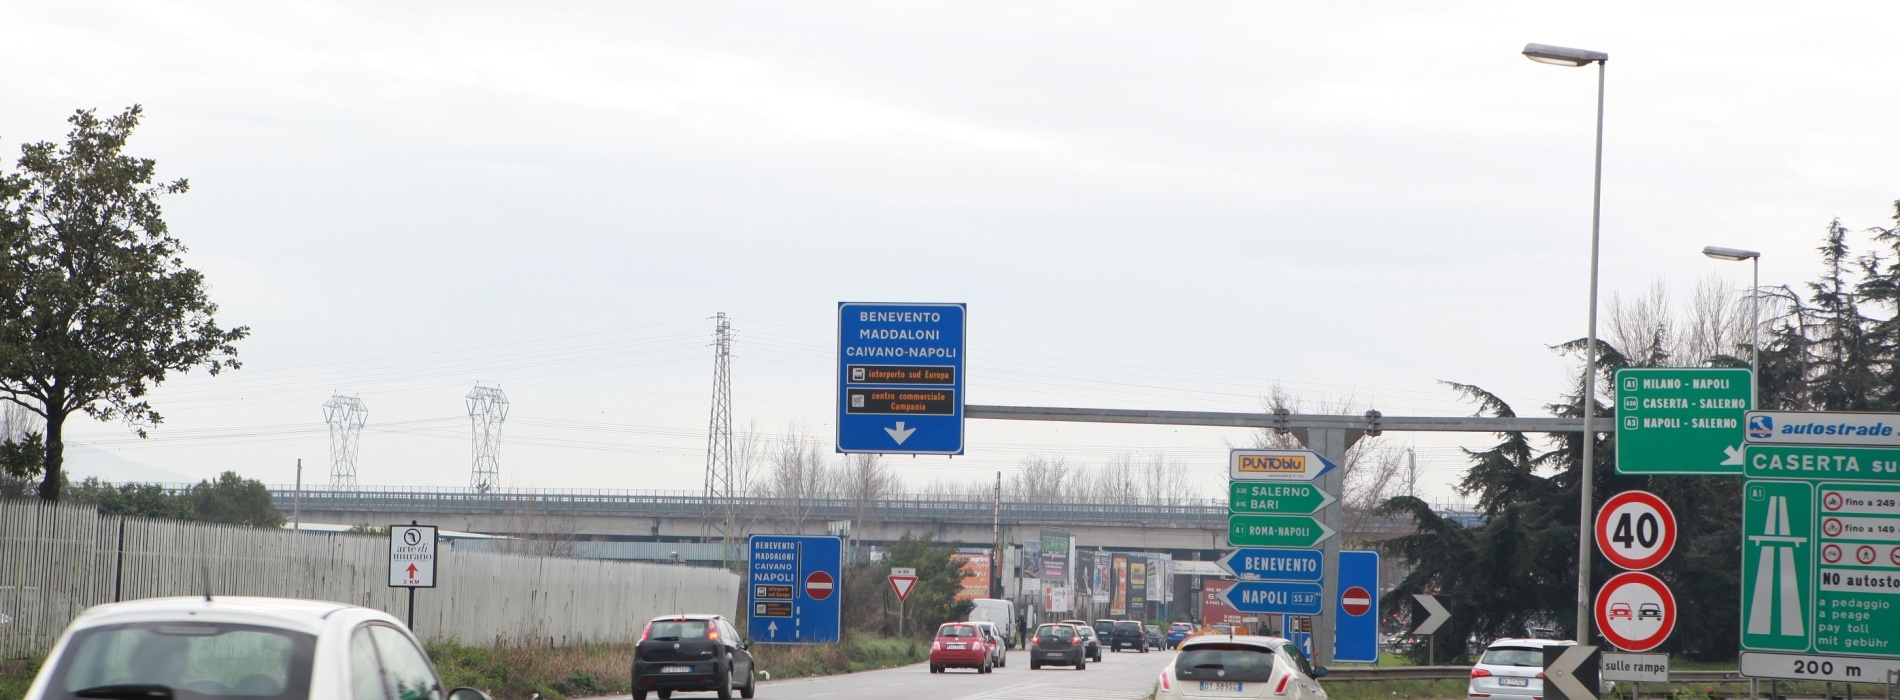 L’Interporto Sud Europa avrà lo svincolo autostradale